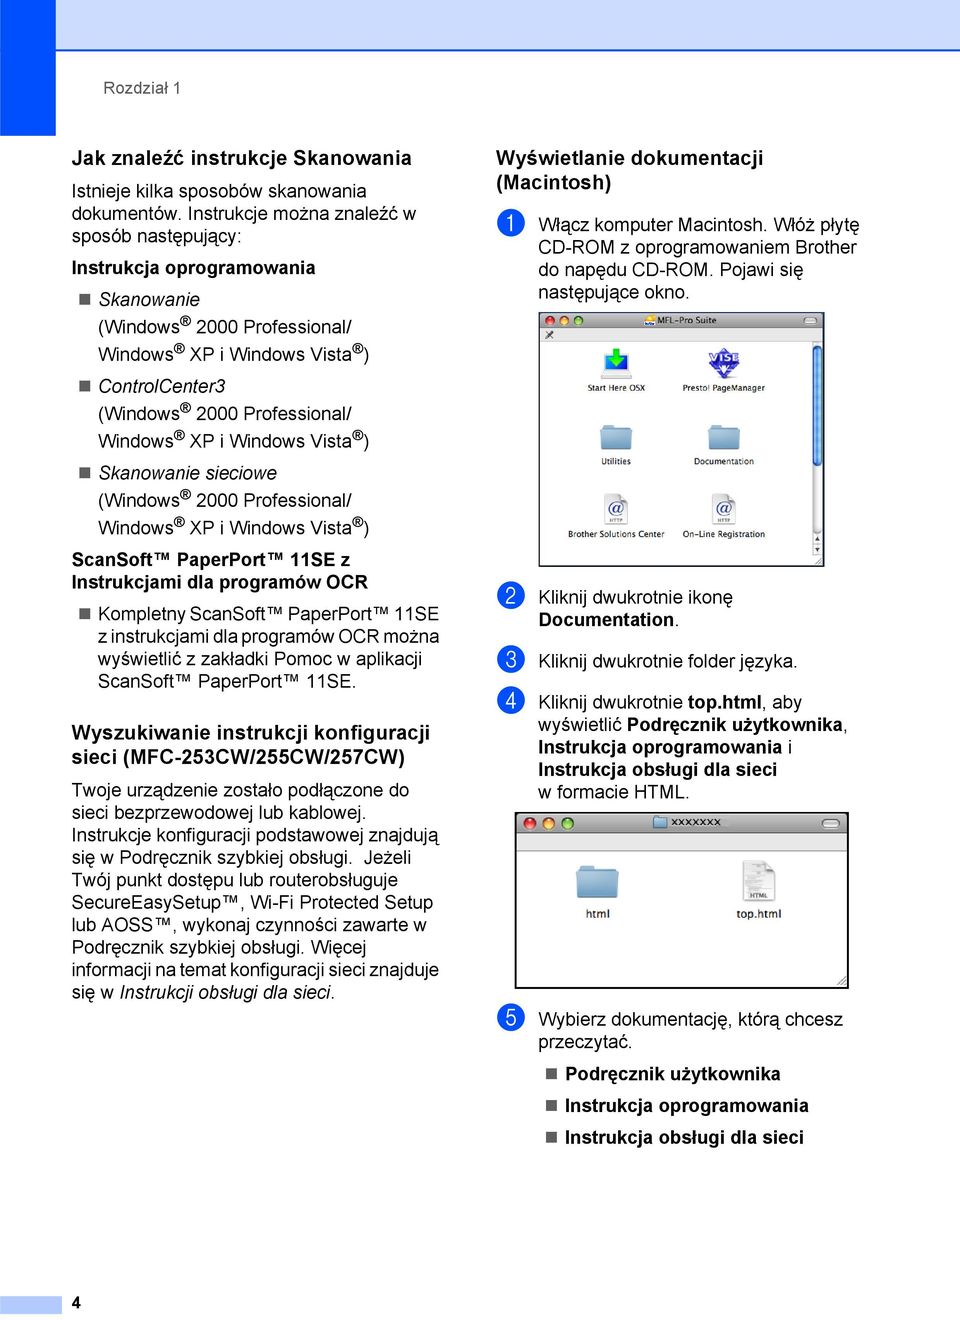 Windows Vista ) Skanowanie sieciowe (Windows 2000 Professional/ Windows XP i Windows Vista ) ScanSoft PaperPort 11SE z Instrukcjami dla programów OCR Kompletny ScanSoft PaperPort 11SE z instrukcjami